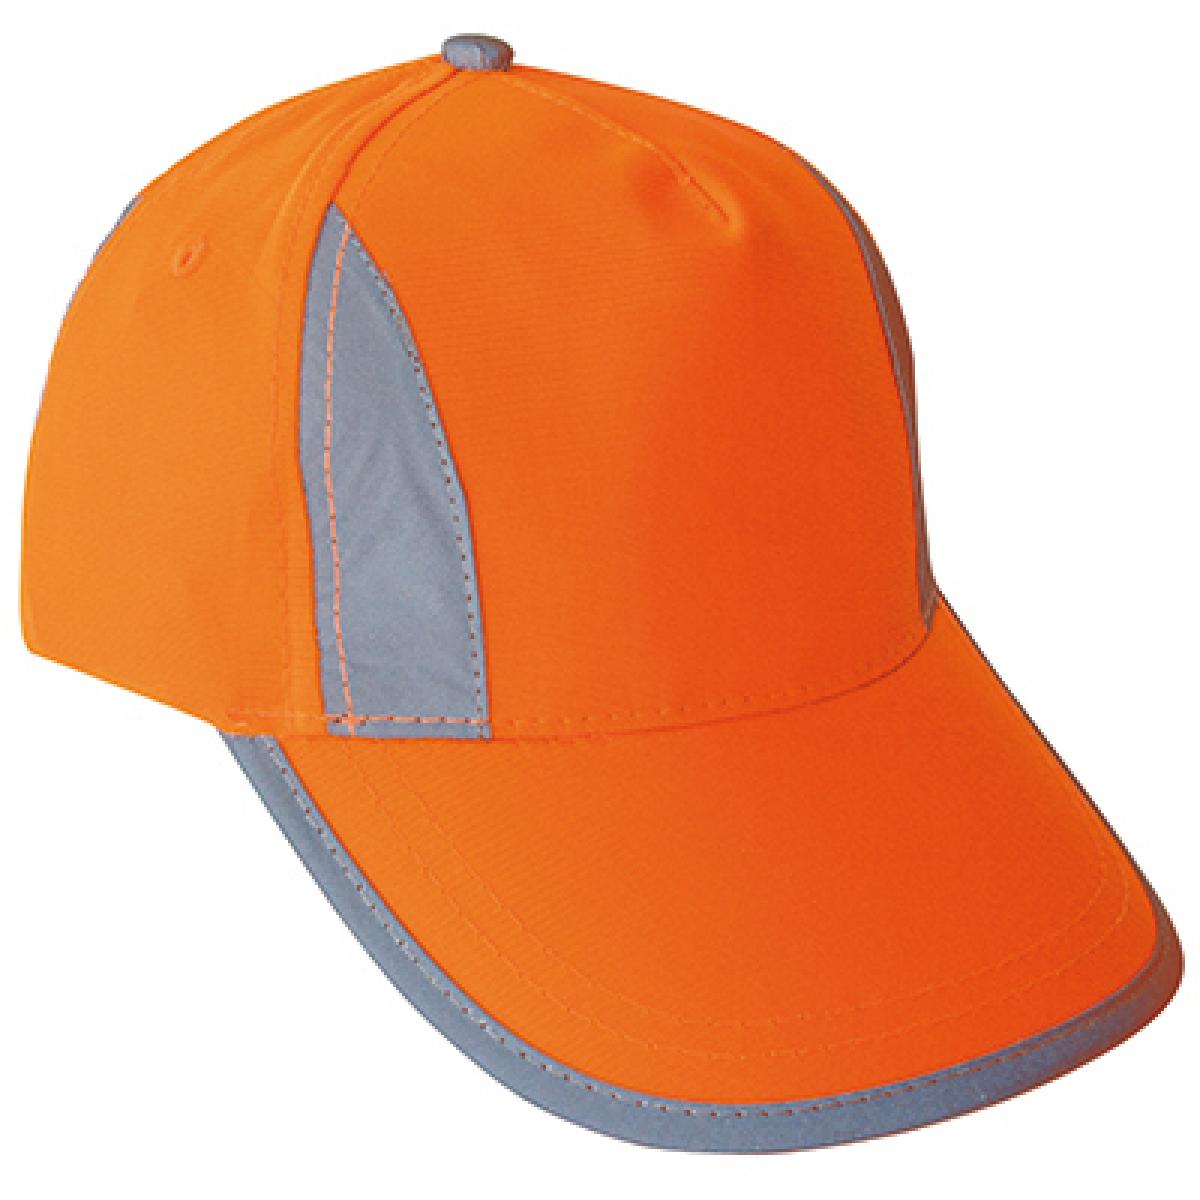 Hersteller: Korntex Herstellernummer: KXPCAP Artikelbezeichnung: Hi-Viz-, Fluo-, Reflective-Cap Farbe: Signal Orange